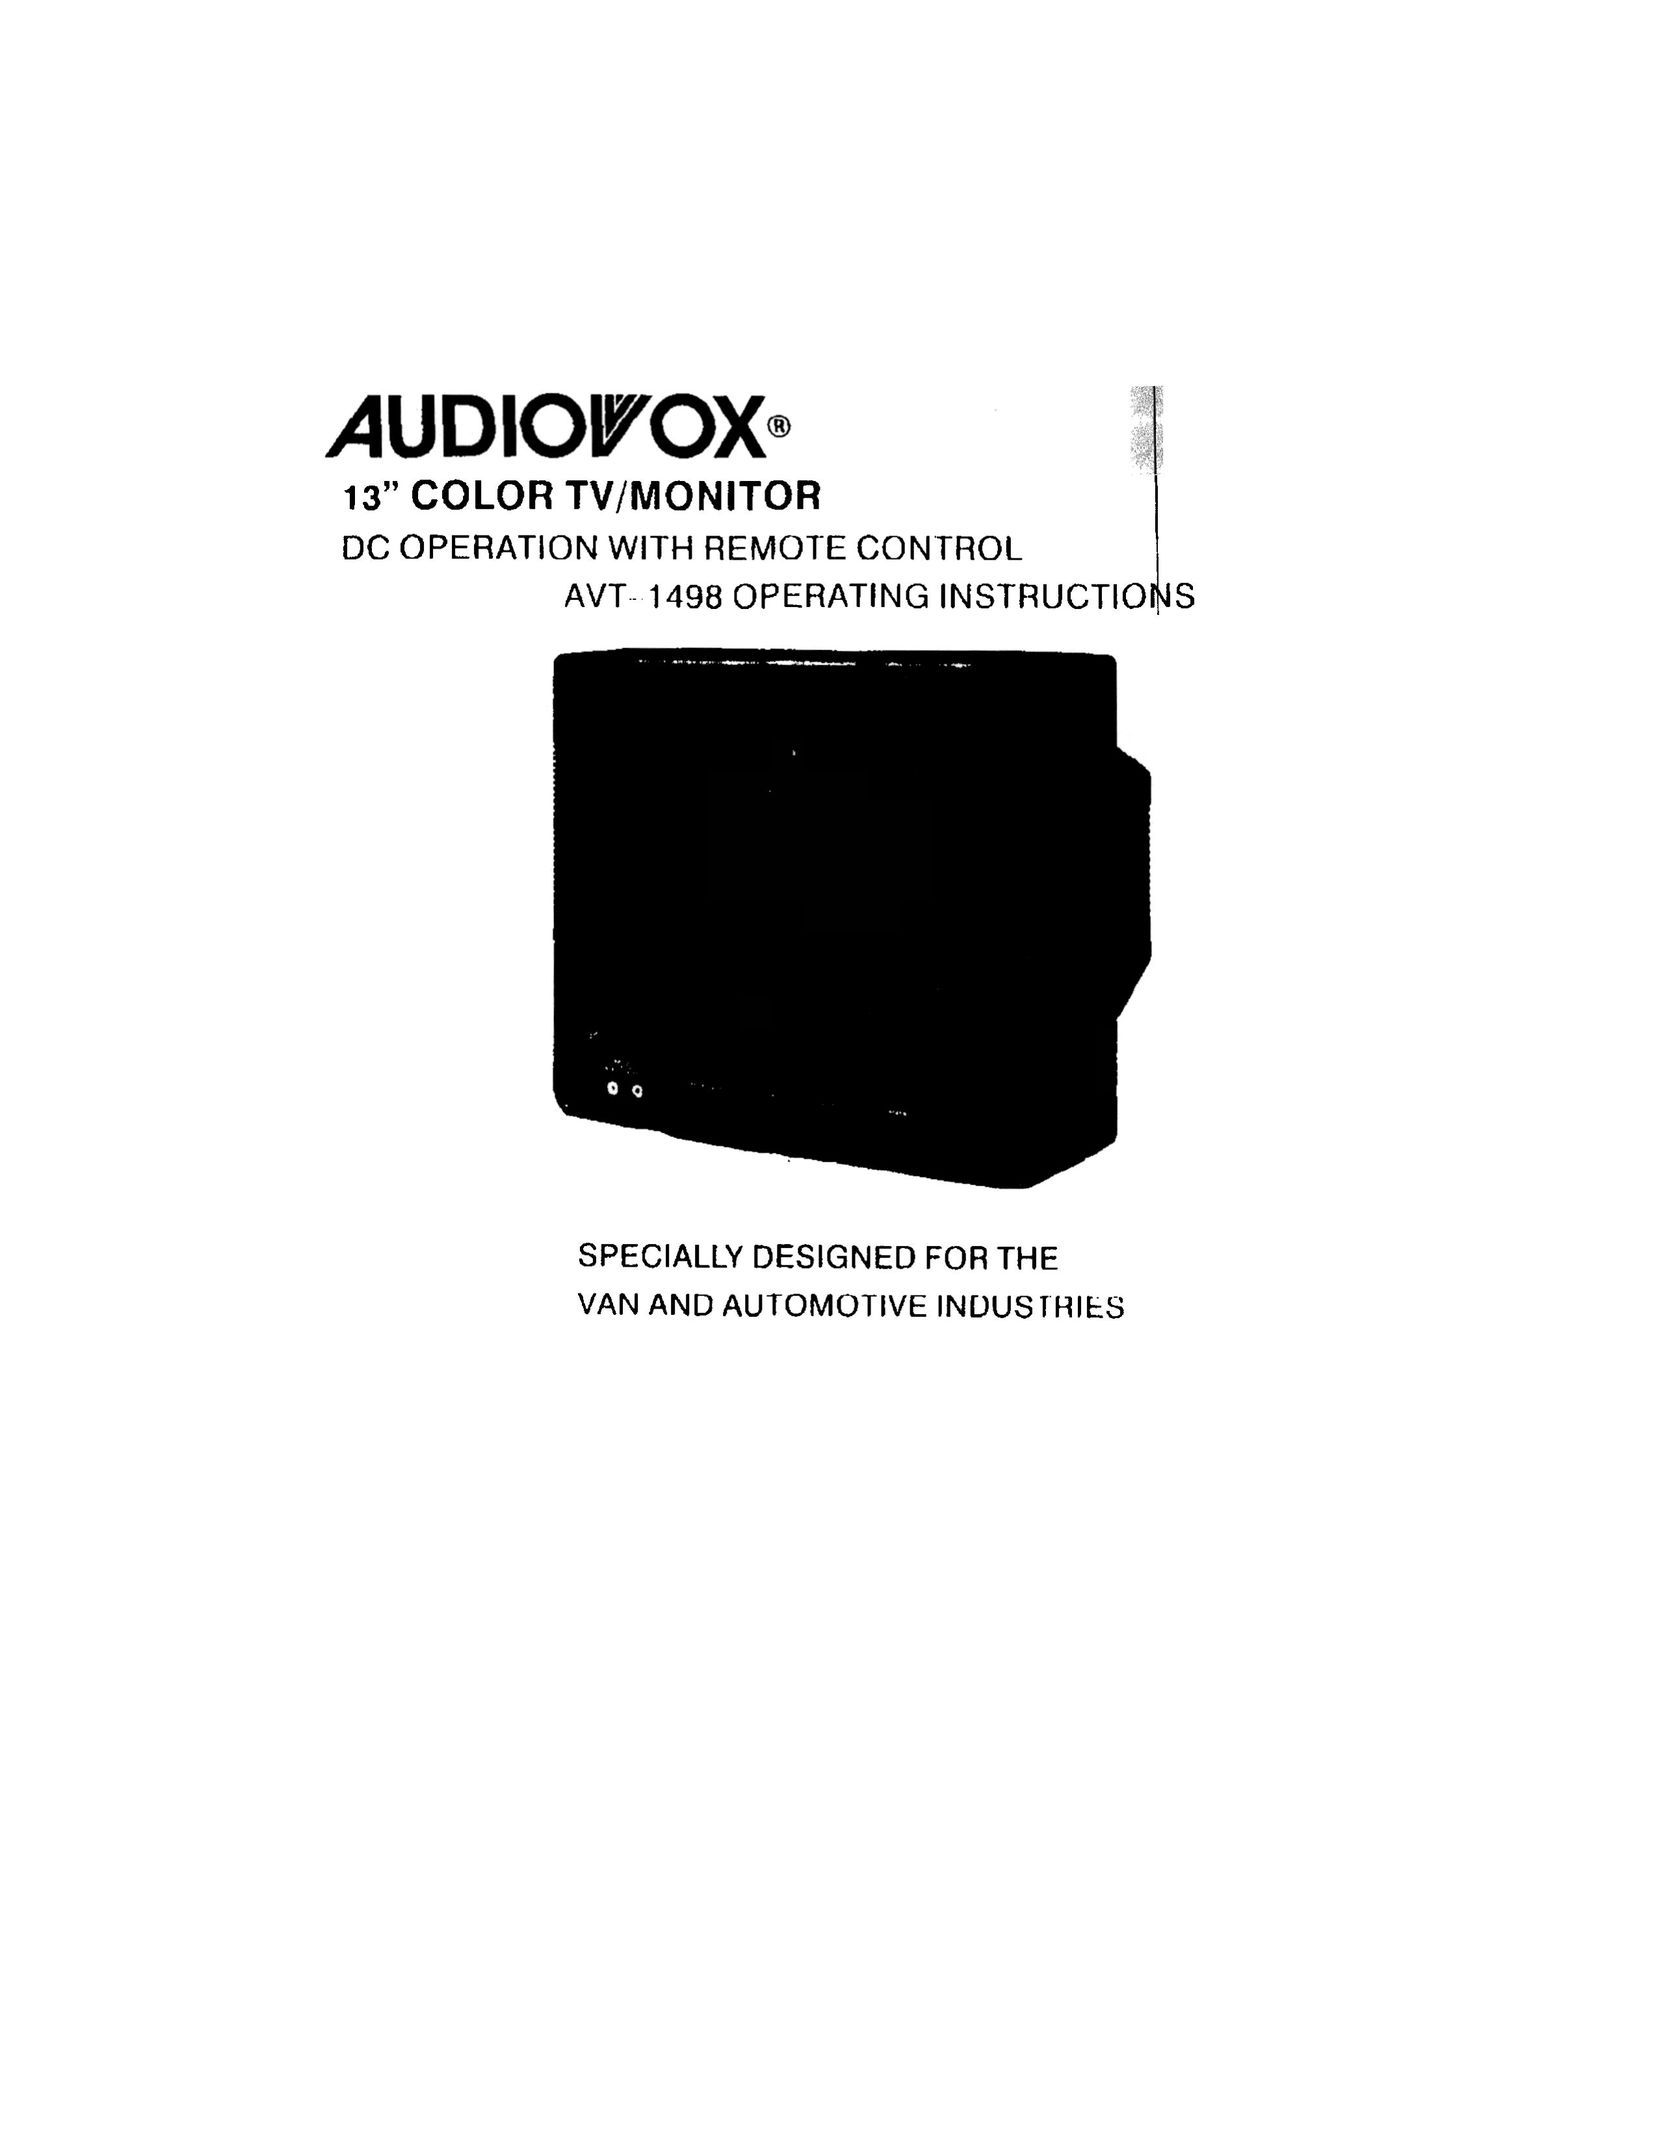 Audiovox AVT 1498 CRT Television User Manual